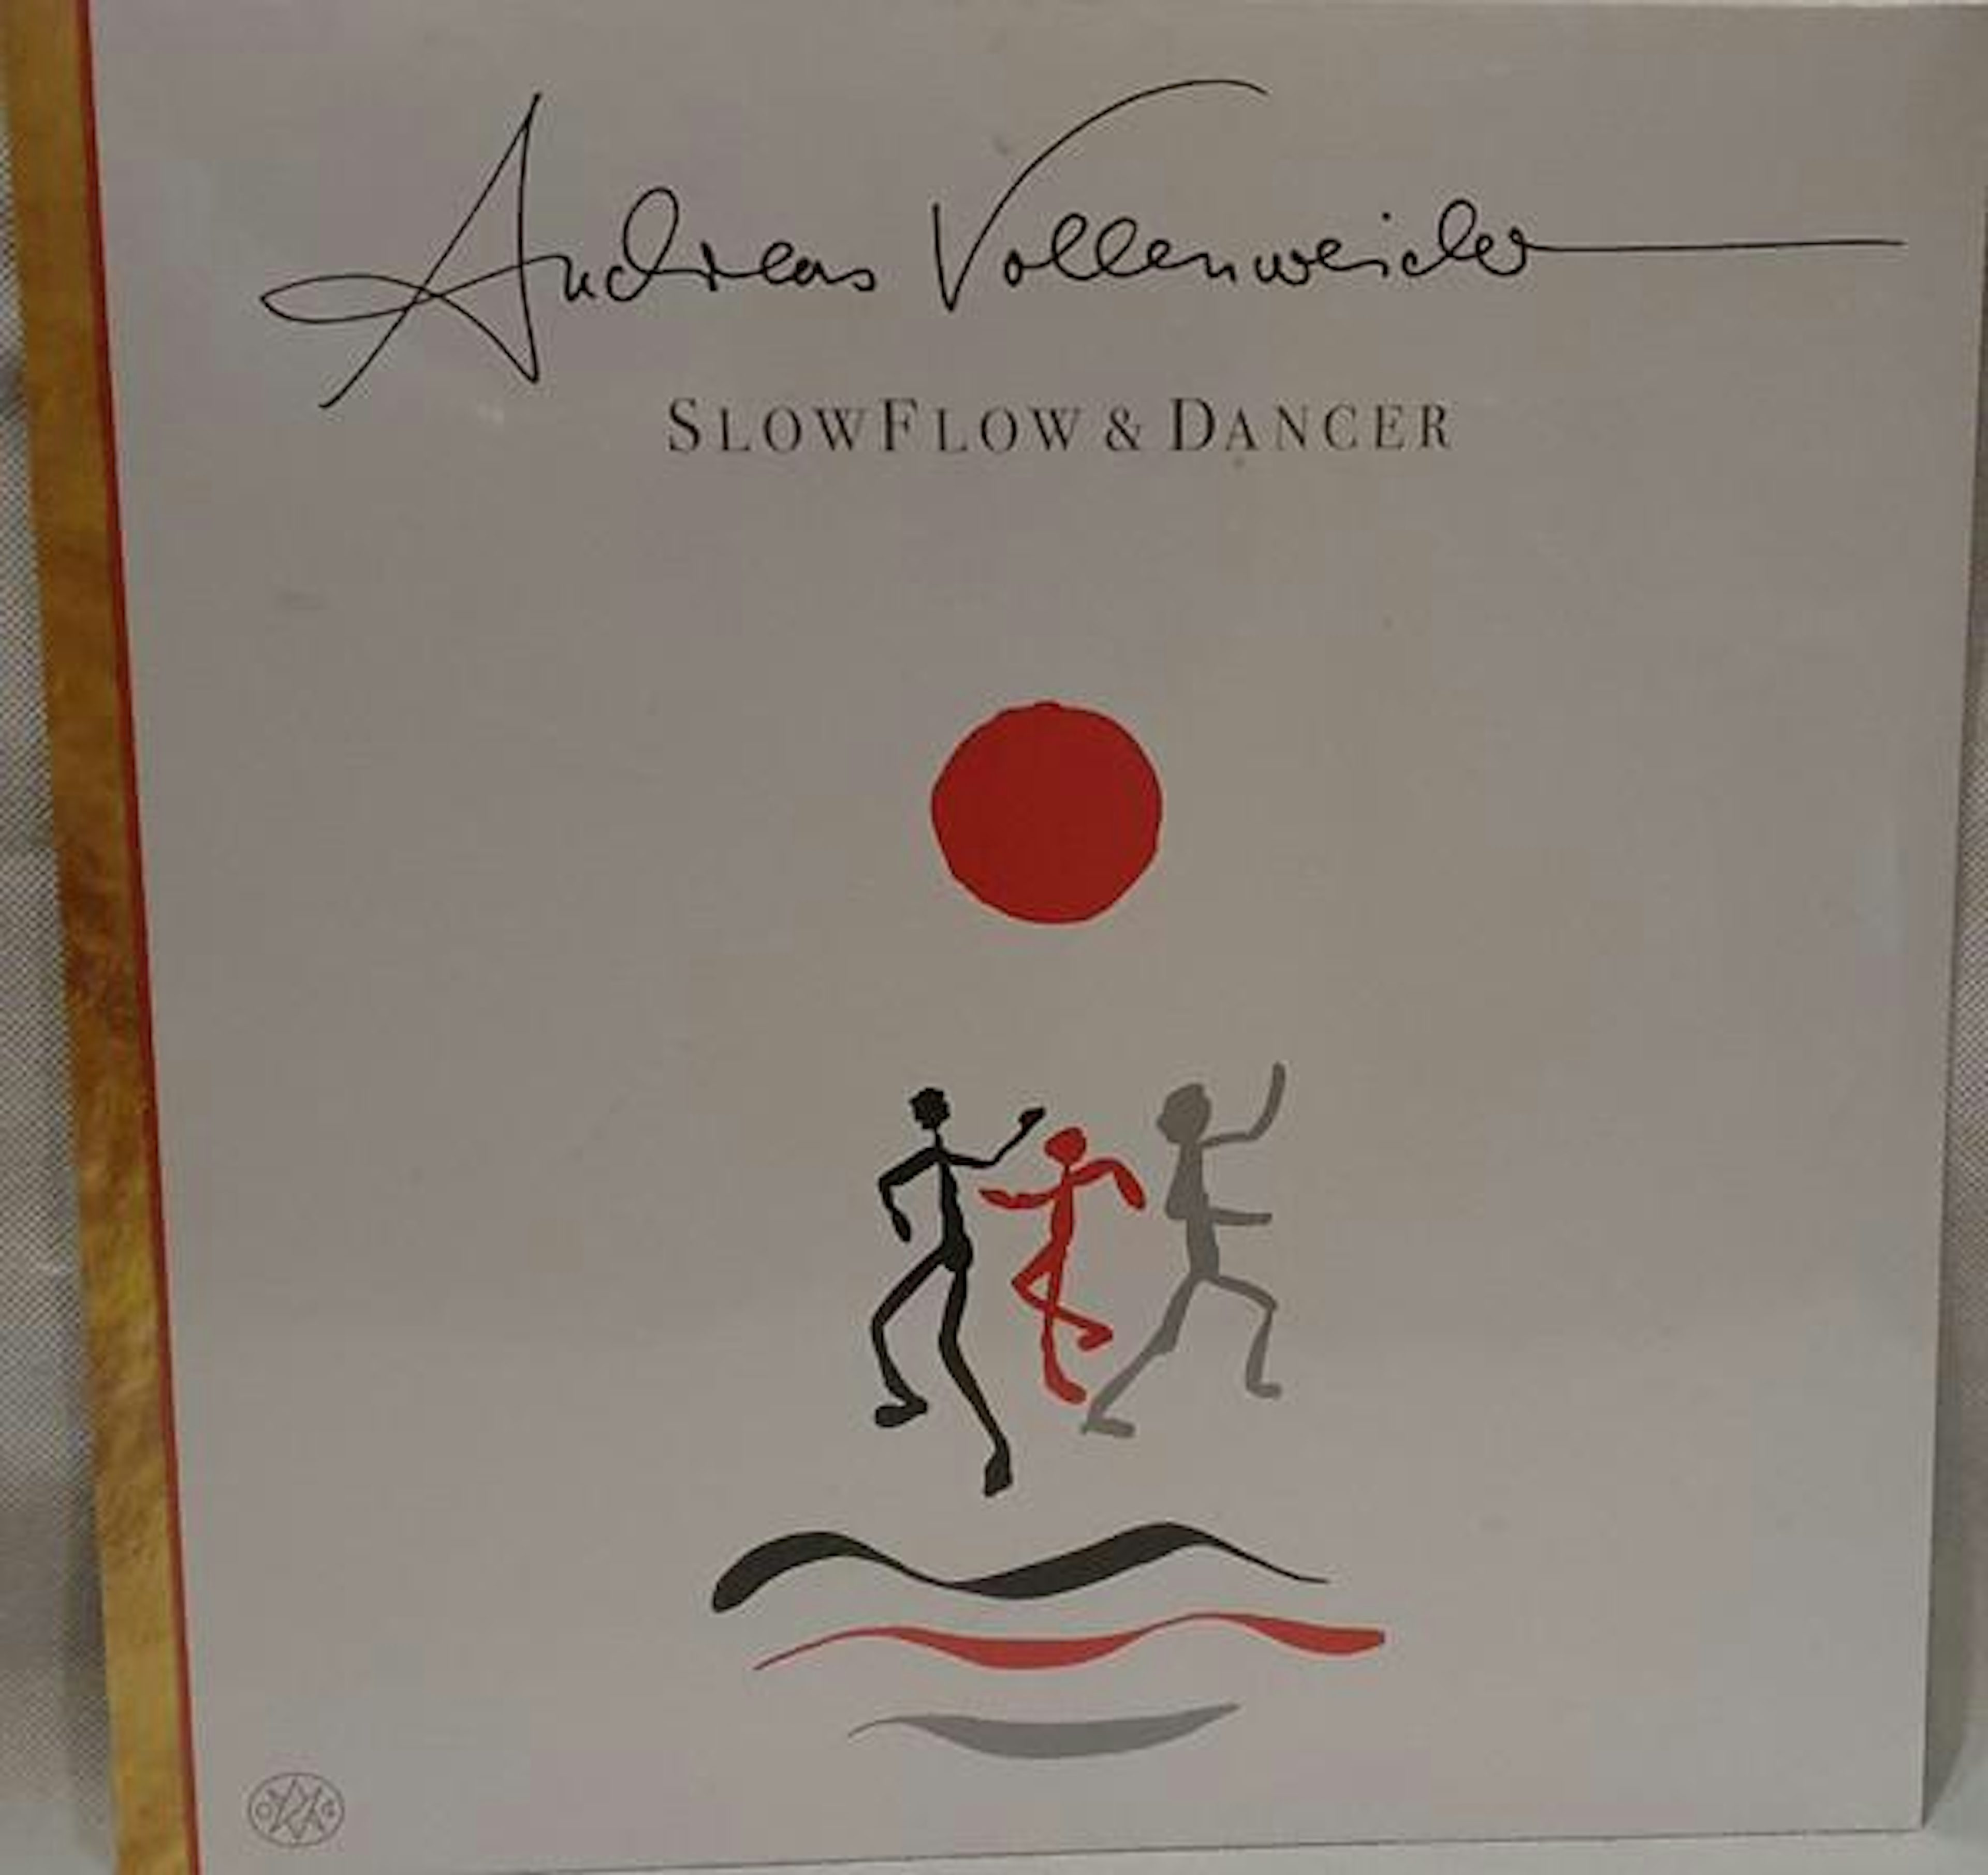 jeg er tørstig sav brugerdefinerede Andreas Vollenweider SLOW FLOW / DANCER Vinyl Record